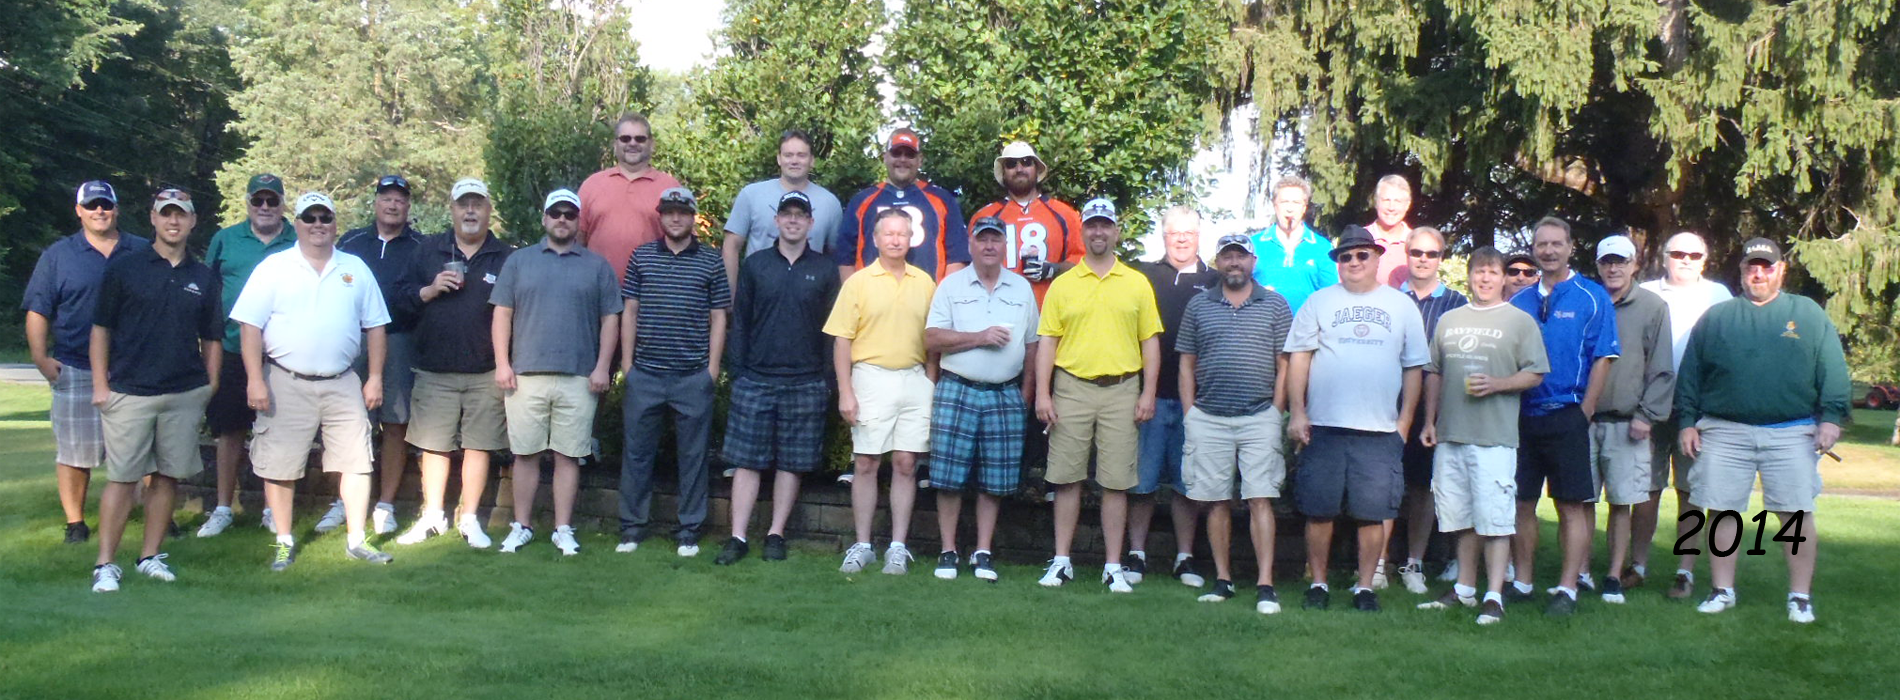 BABES Golf Tournament - 2014